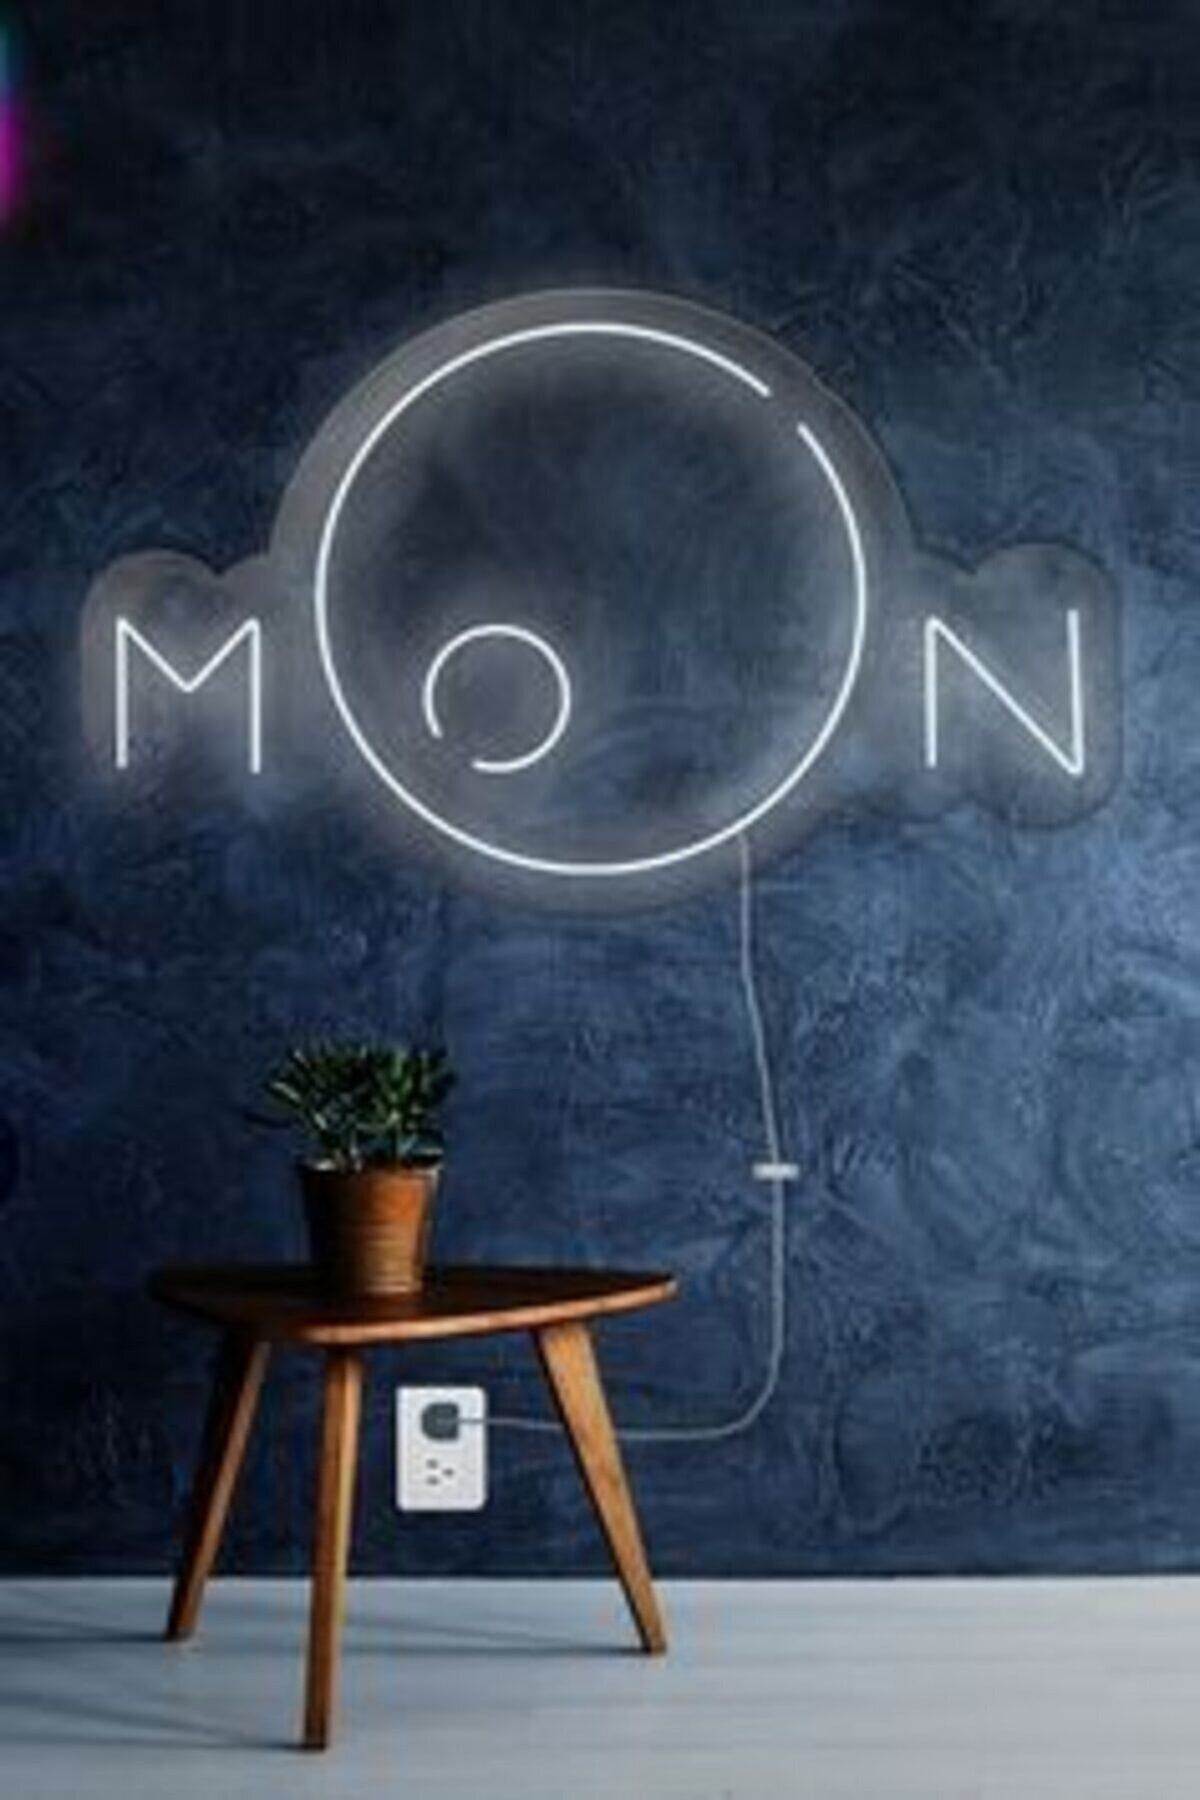 SMİLE CONCEPT Ay Figürü Moon - Neon Led Dekoratif Duvar Yazısı Tabelası Aydınlatması Gece Lambası